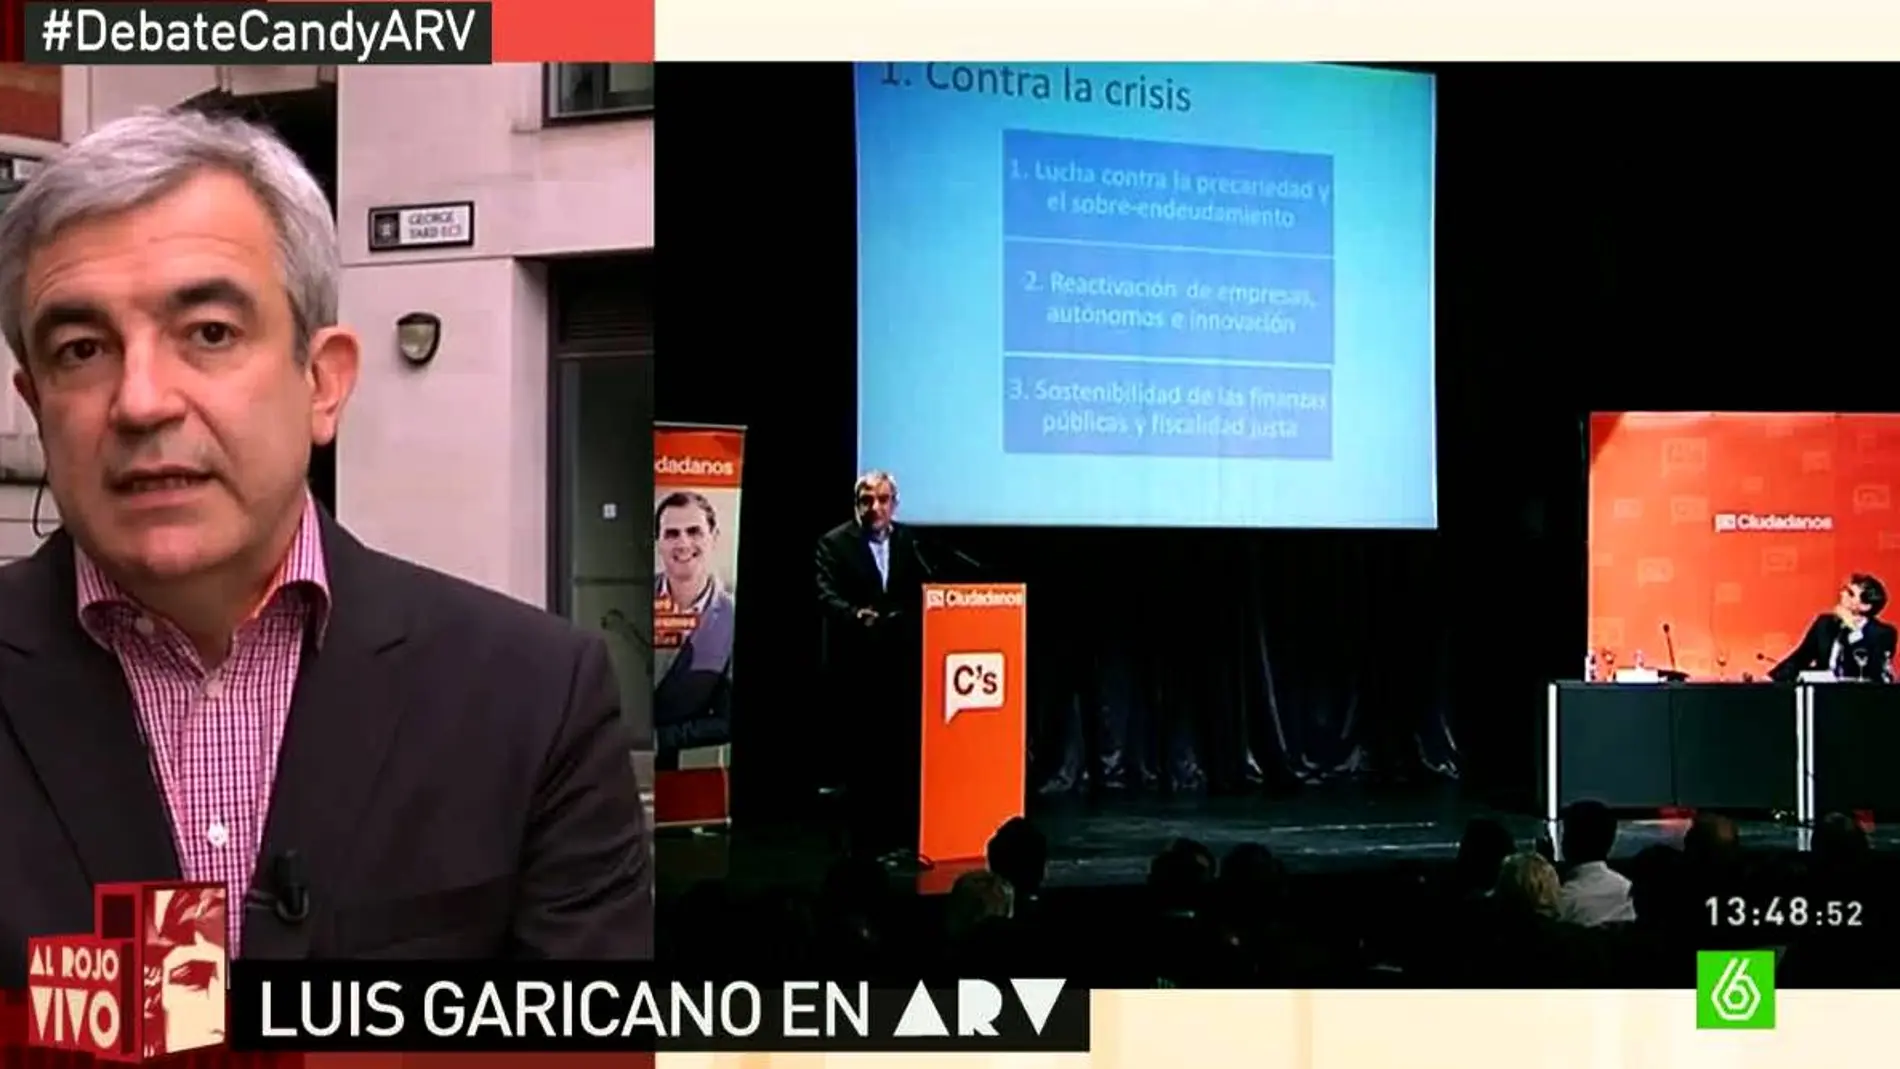 Luis Garicano en ARV